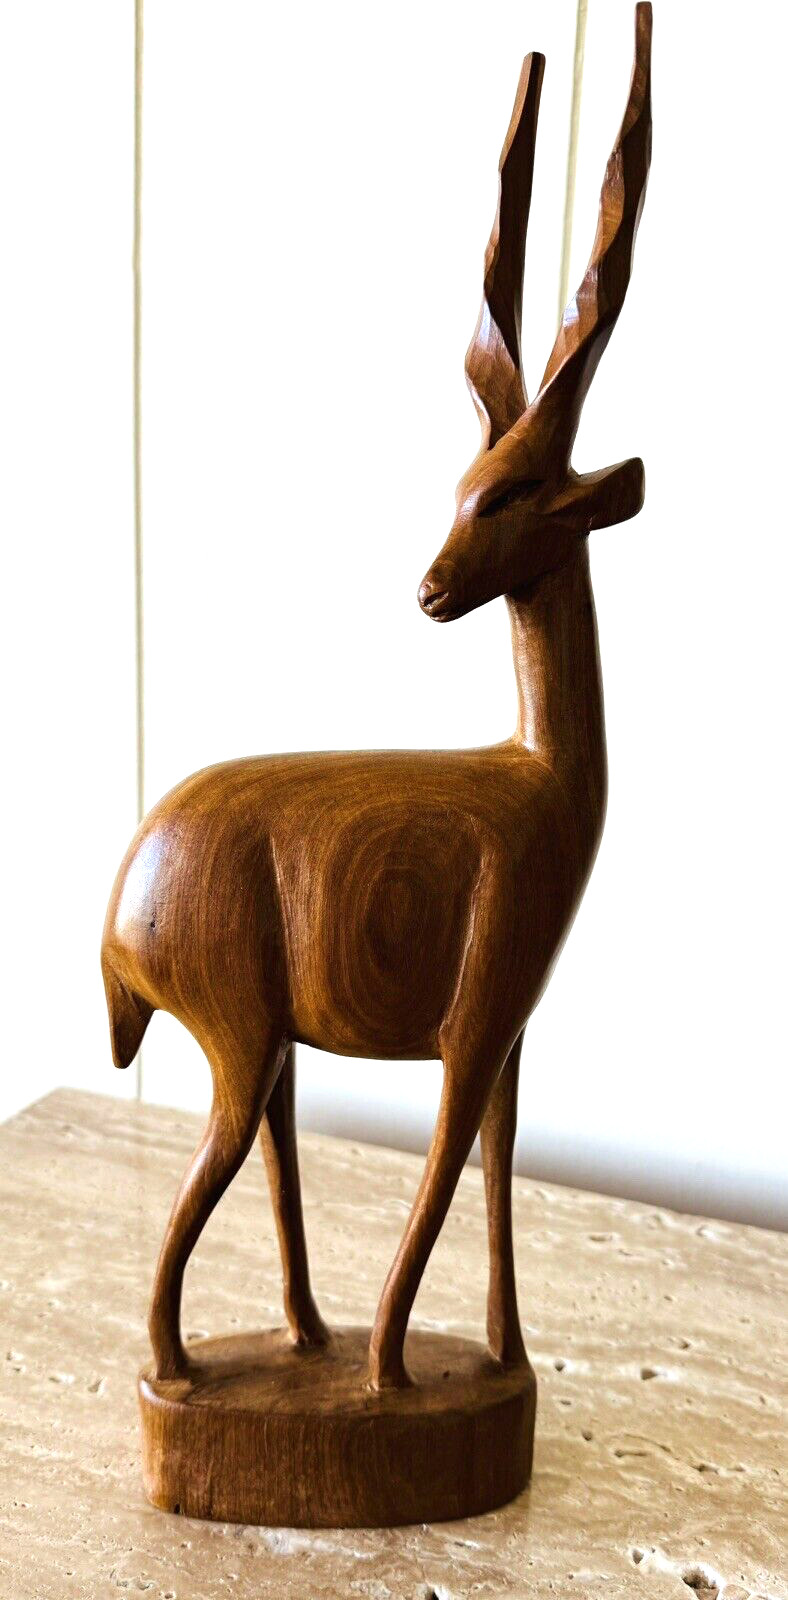 Vintage Hand-Carved Wooden Antelope/Gazelle 14” Tall, Kenya